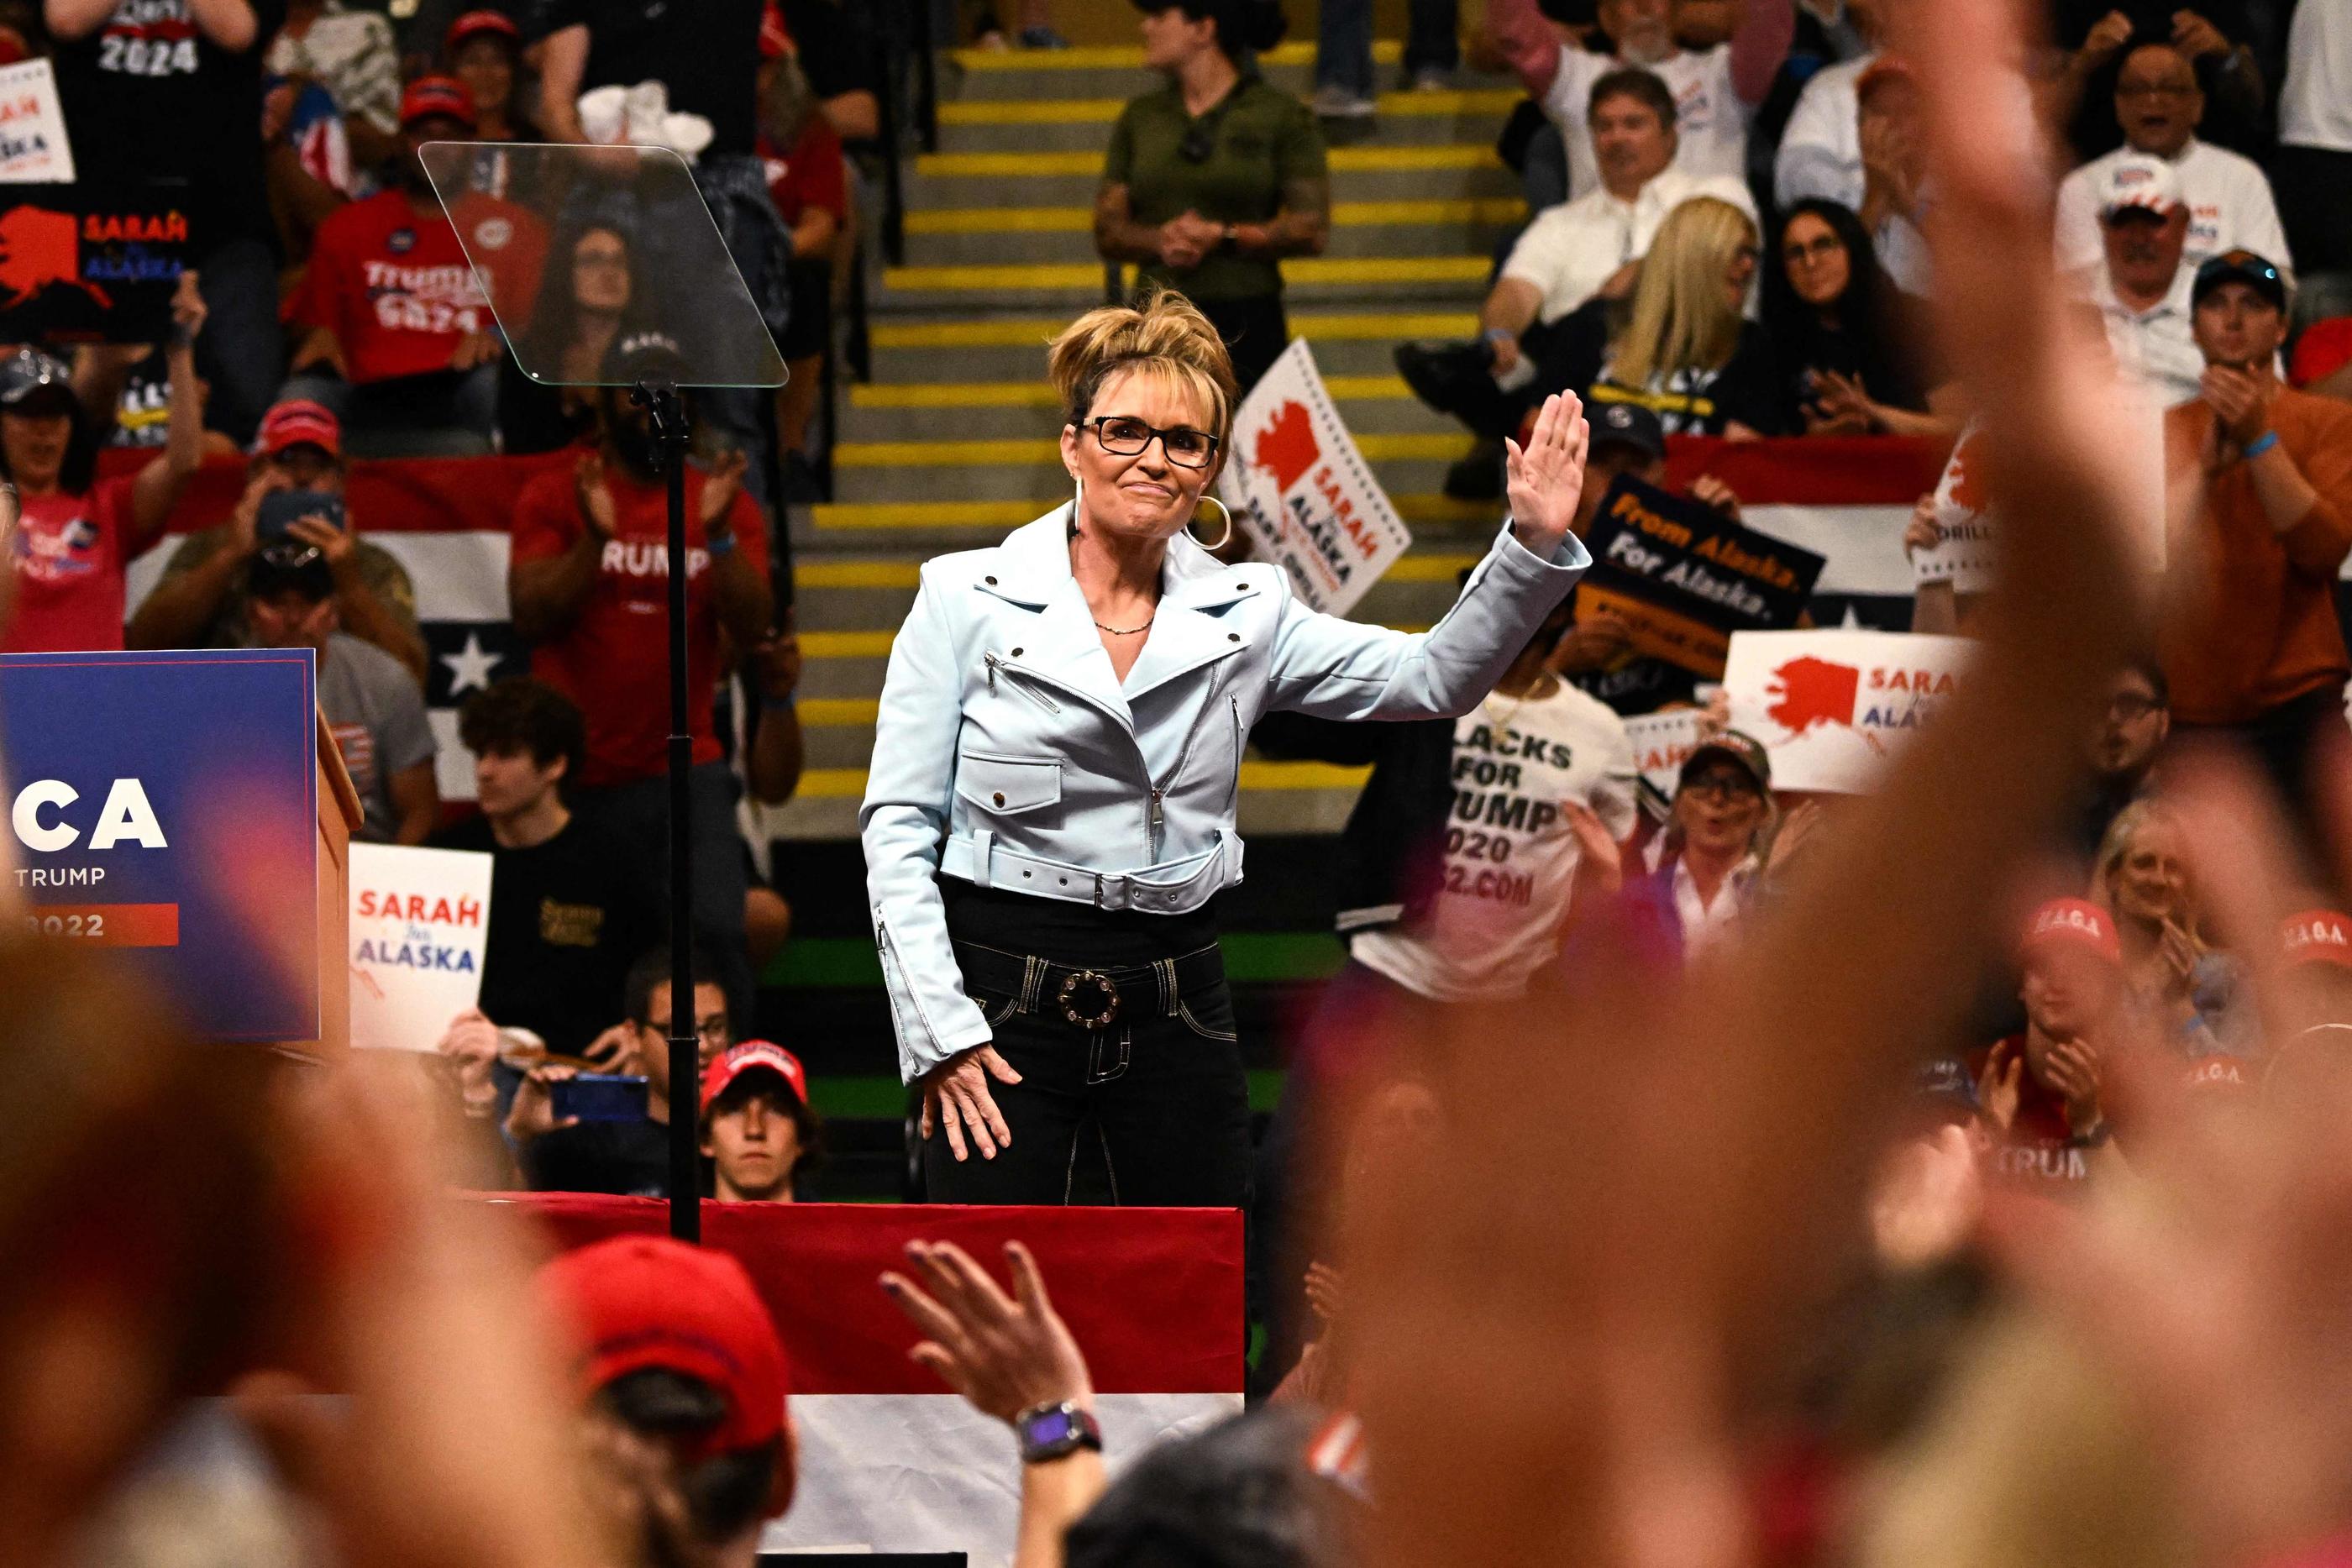 Sarah Palin, ici en juillet dernier, a perdu mardi l'élection pour occuper le siège vacant de l'État d'Alaska à la Chambre des représentants des États-Unis. AFP/Patrick T. FALLON